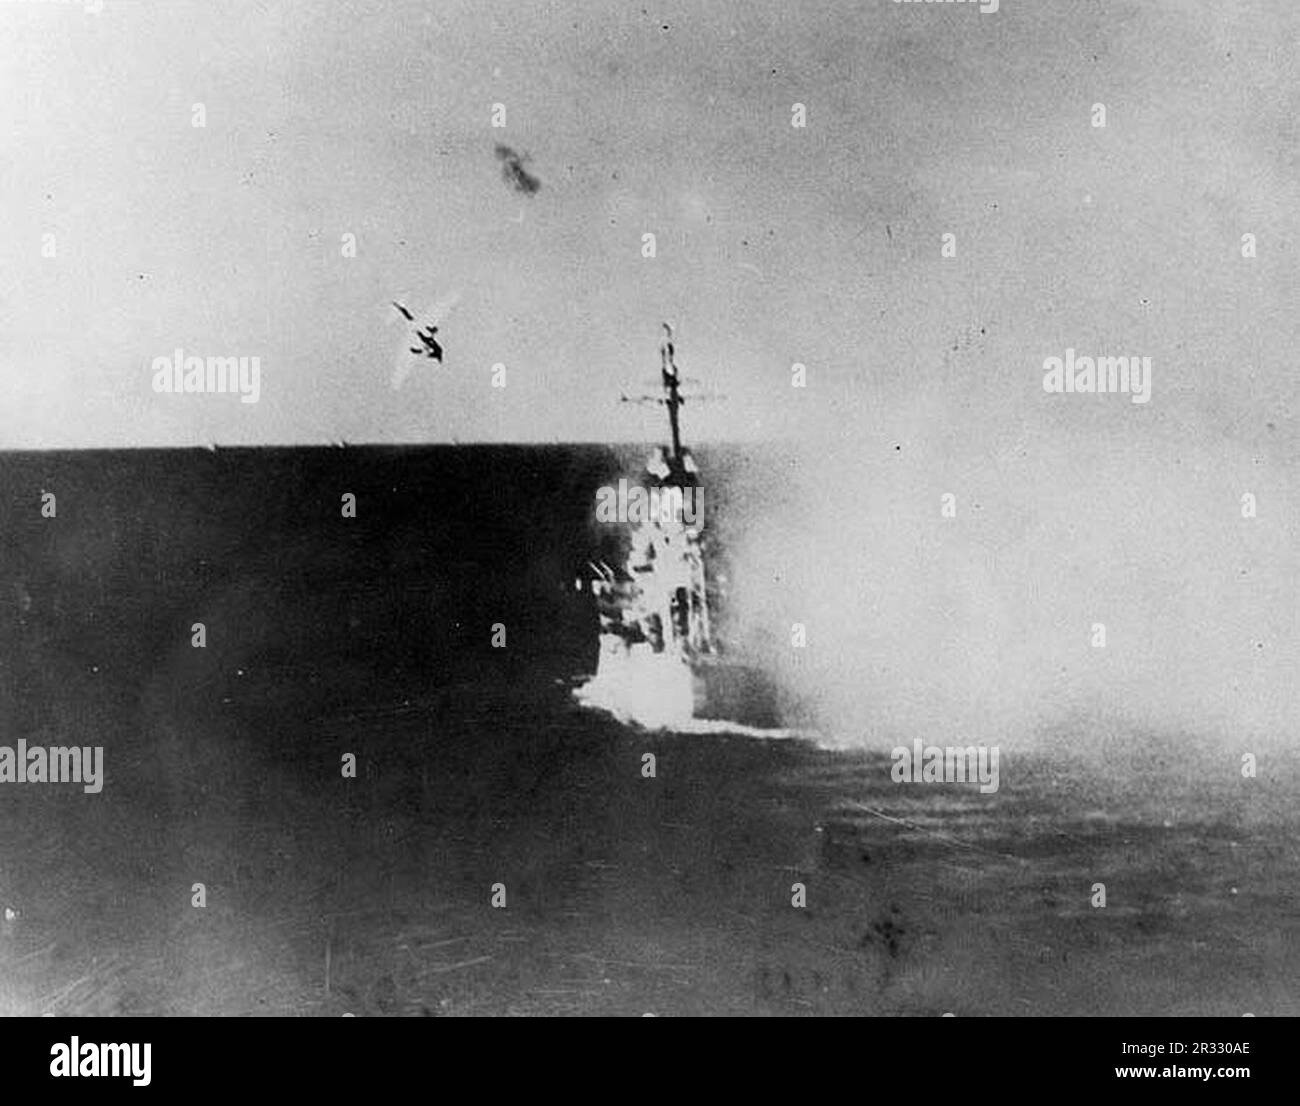 Un avion japonais Kamikaze plongée sur les États-Unis Navire de croisière léger USS Columbia (CL-56) à 1729 heures le 6 janvier 1945, pendant l'opération du golfe de Lingayen. Cet avion a heurté le pont principal par la tourelle de l'après-canon, causant des dommages importants et des pertes. L'avion et sa bombe ont pénétré deux ponts avant d'exploser, tuant 13 personnes et blessant 44 personnes. Lorsque le Japon était confronté à la défaite de fin 1944, il a choisi de détruire des navires américains par des attentats-suicides, connus sous le nom de Kamikaze.ces attaques étaient une arme physique et psychologique puissante et ont coulé un total de 47 navires pour un coût de plus de 3000 pilotes et avions. Vers la fin de 19 Banque D'Images